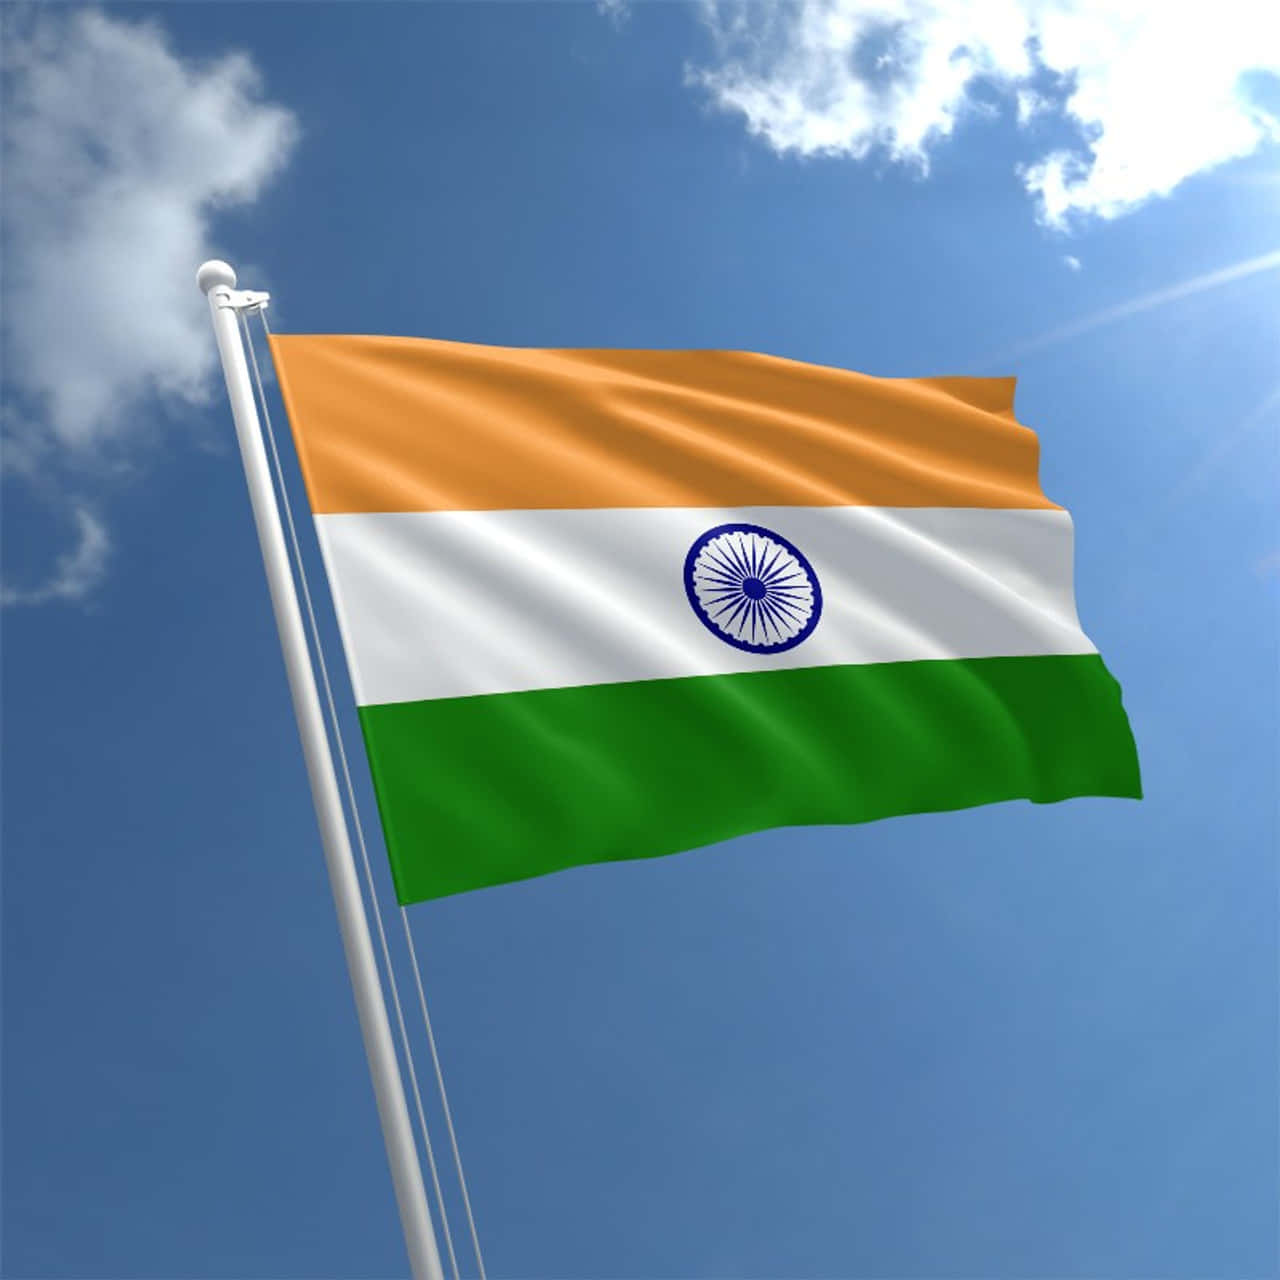 Muestratu Amor Por India Con Esta Bandera De La India.